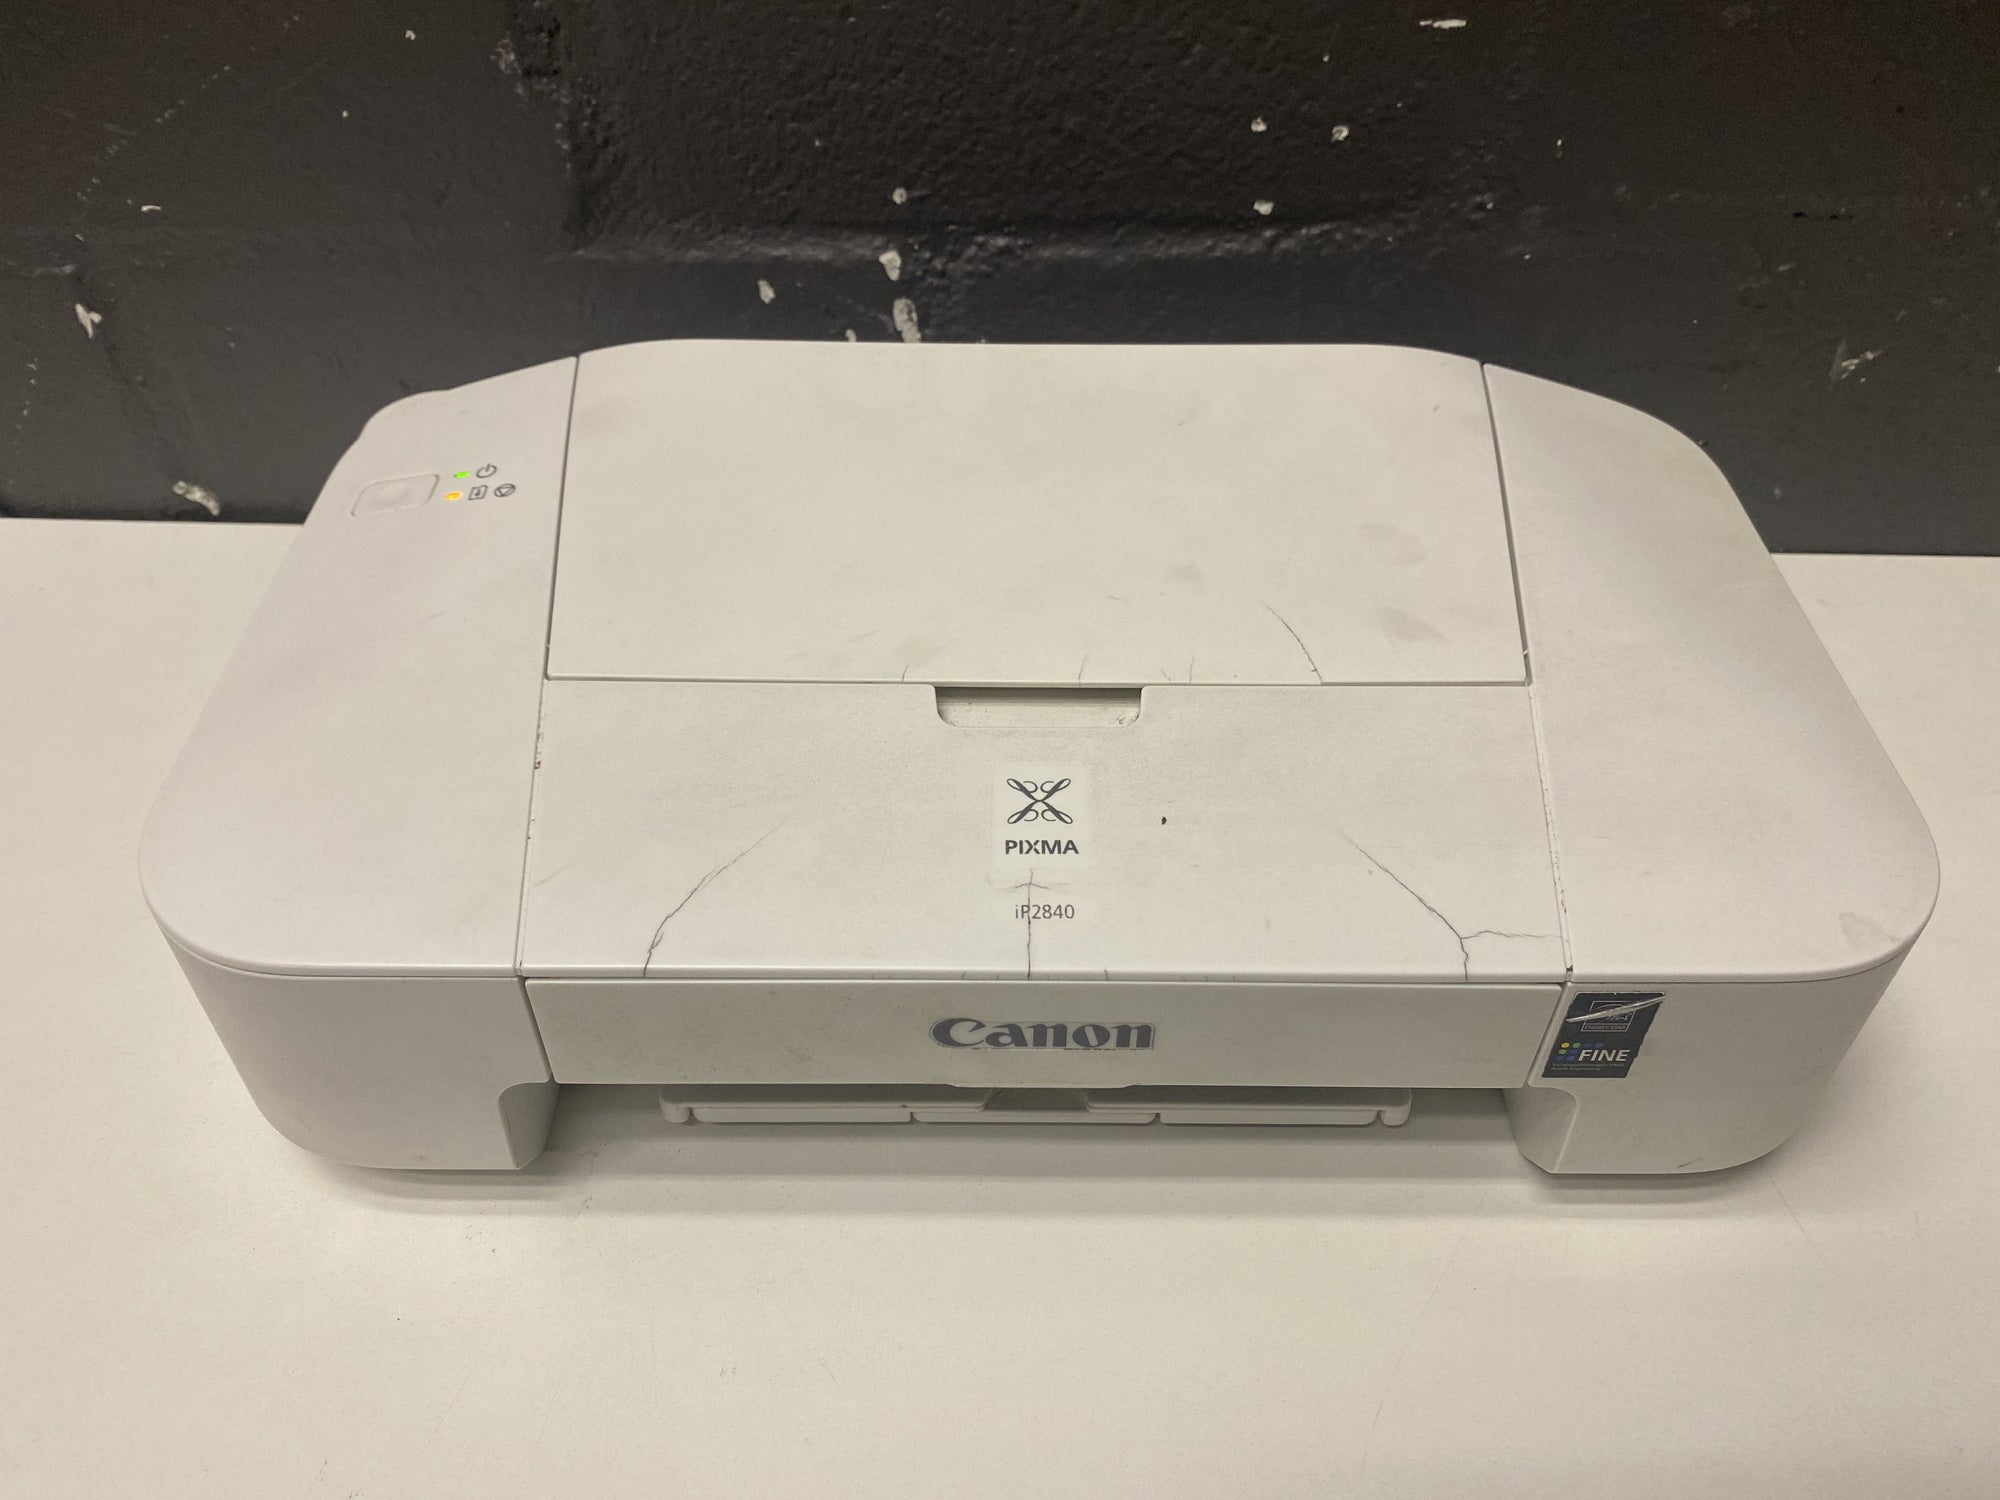 Cannon White Printer